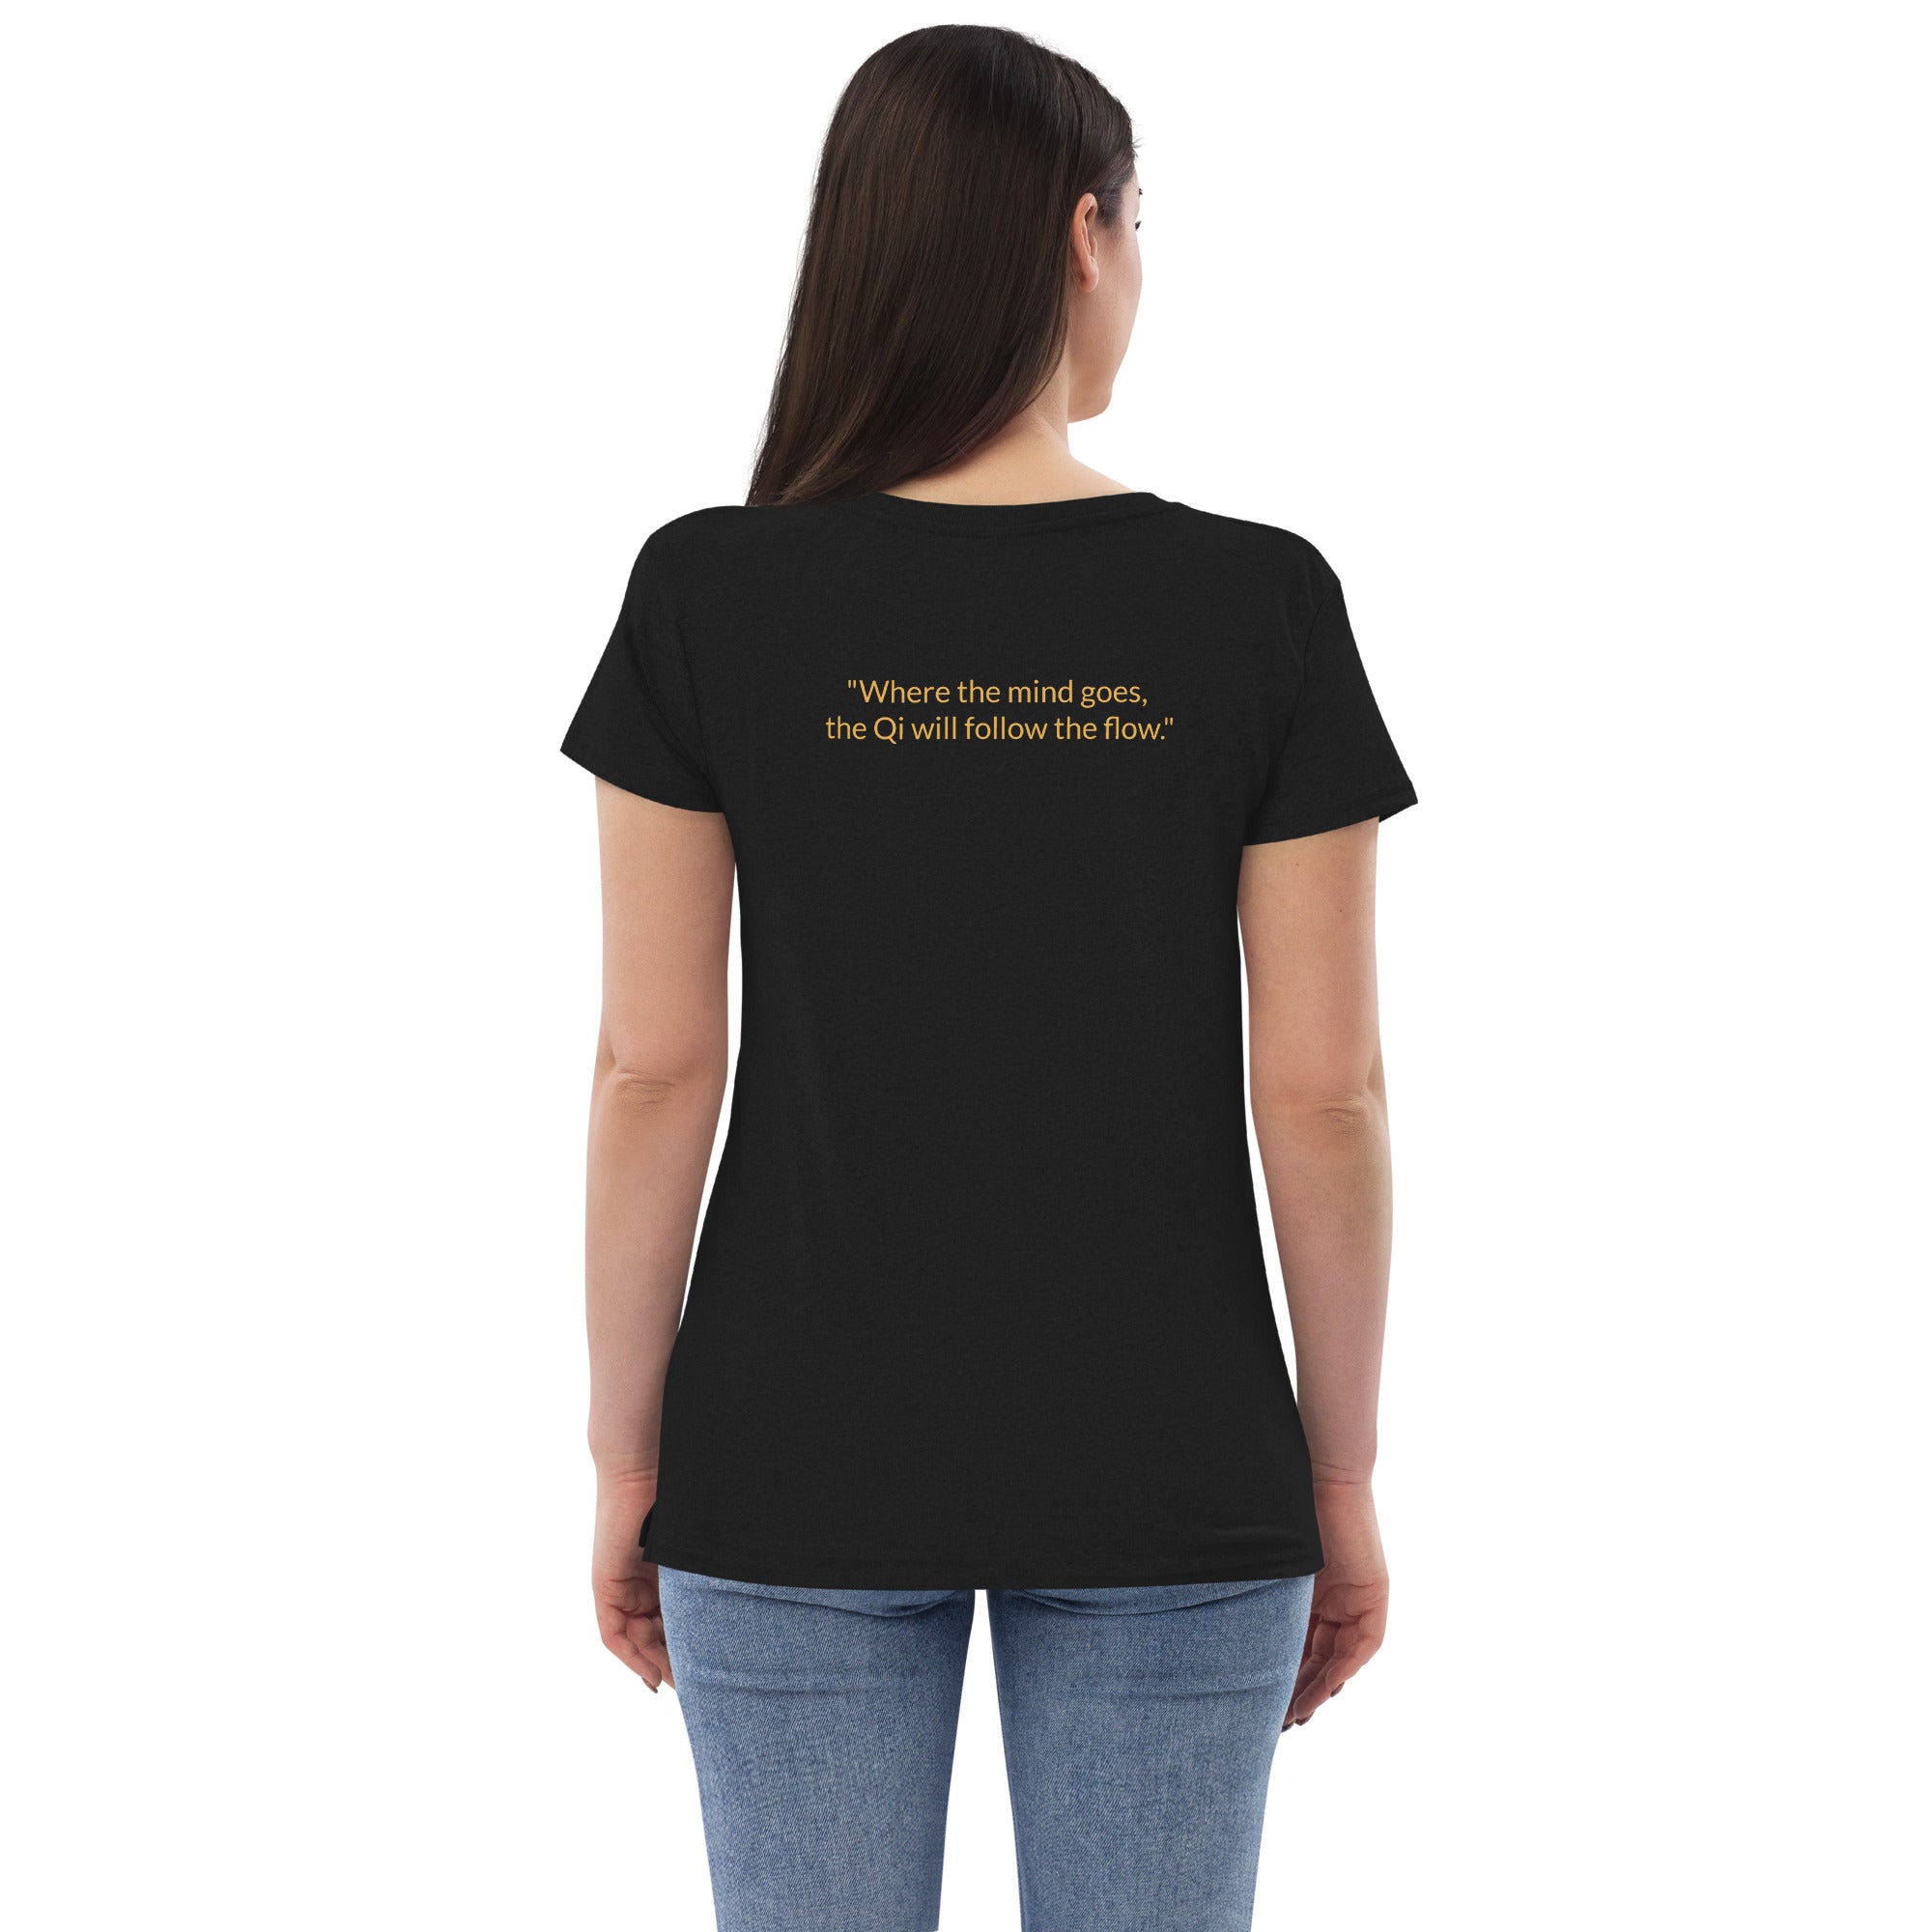 HYQT Golden T-shirt